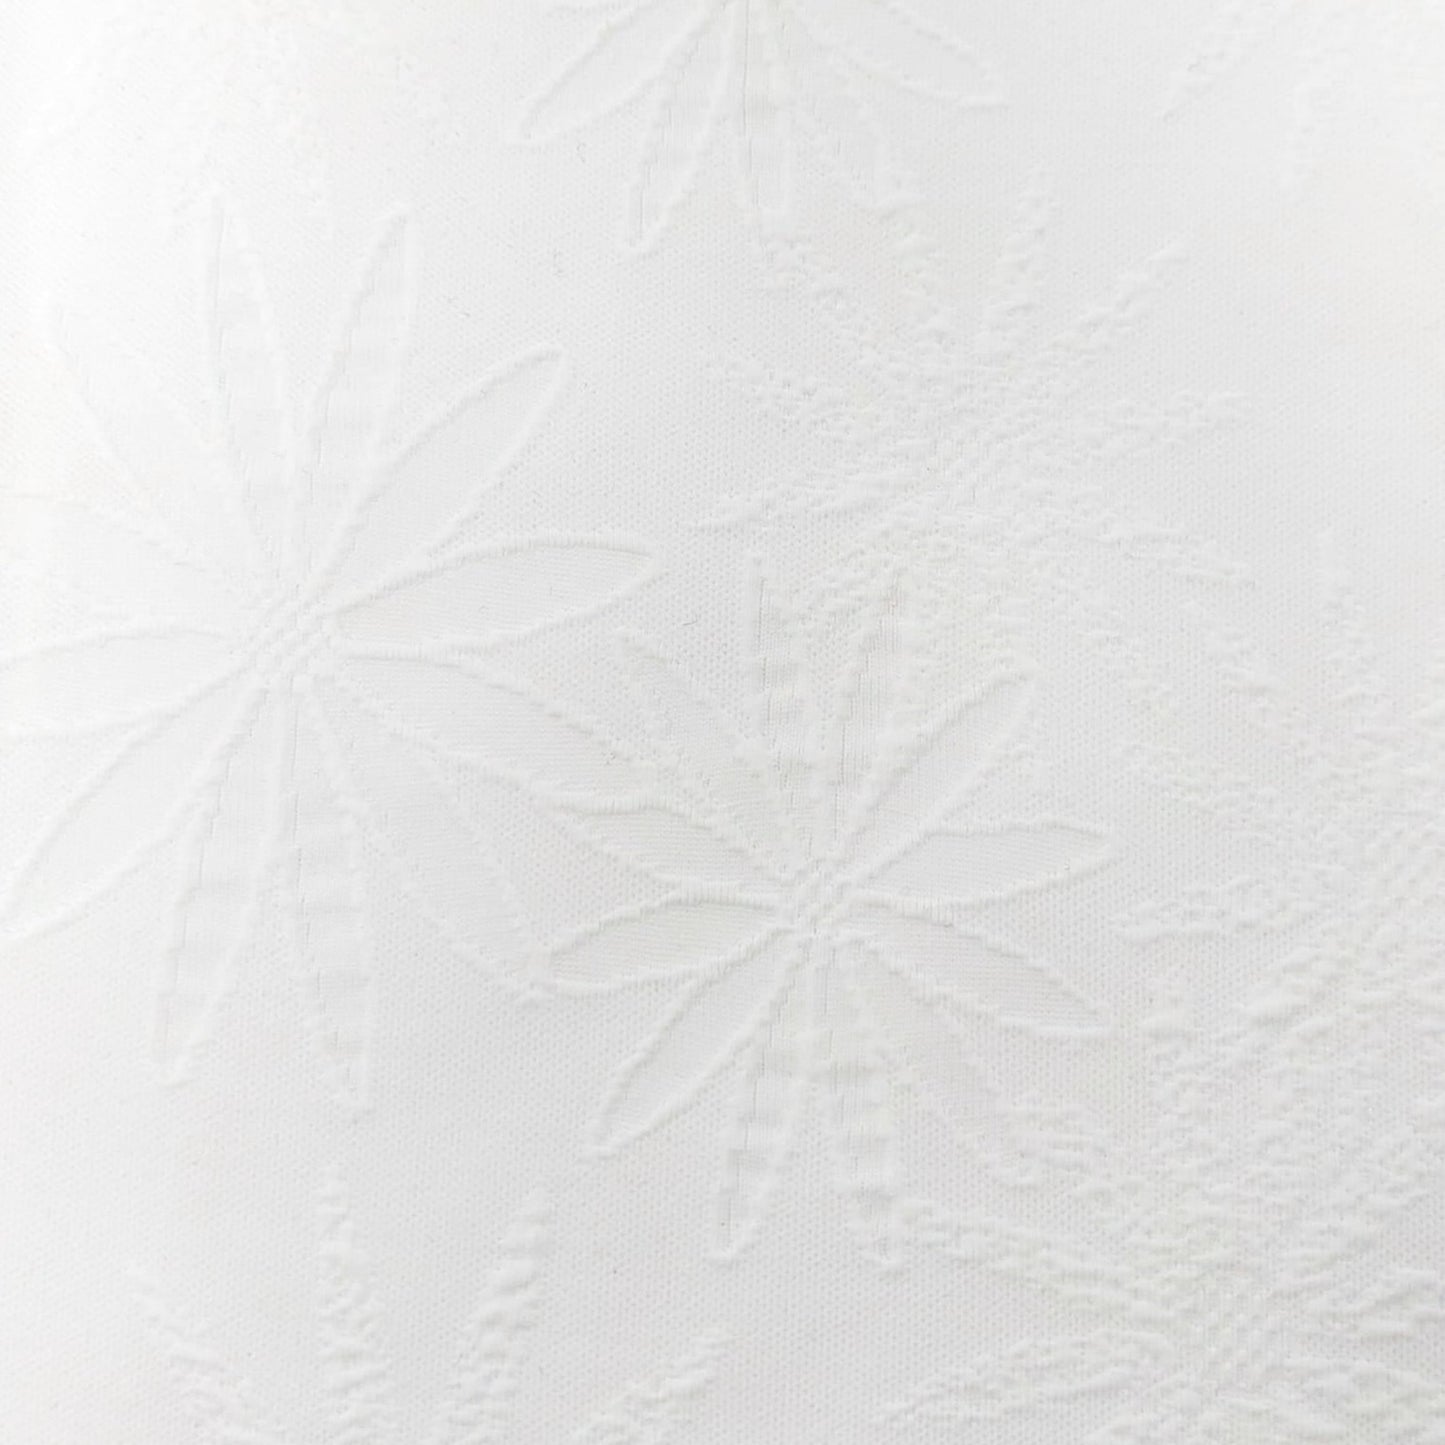 Maglina poliestere / Bianco con disegno Fiori in rilievo